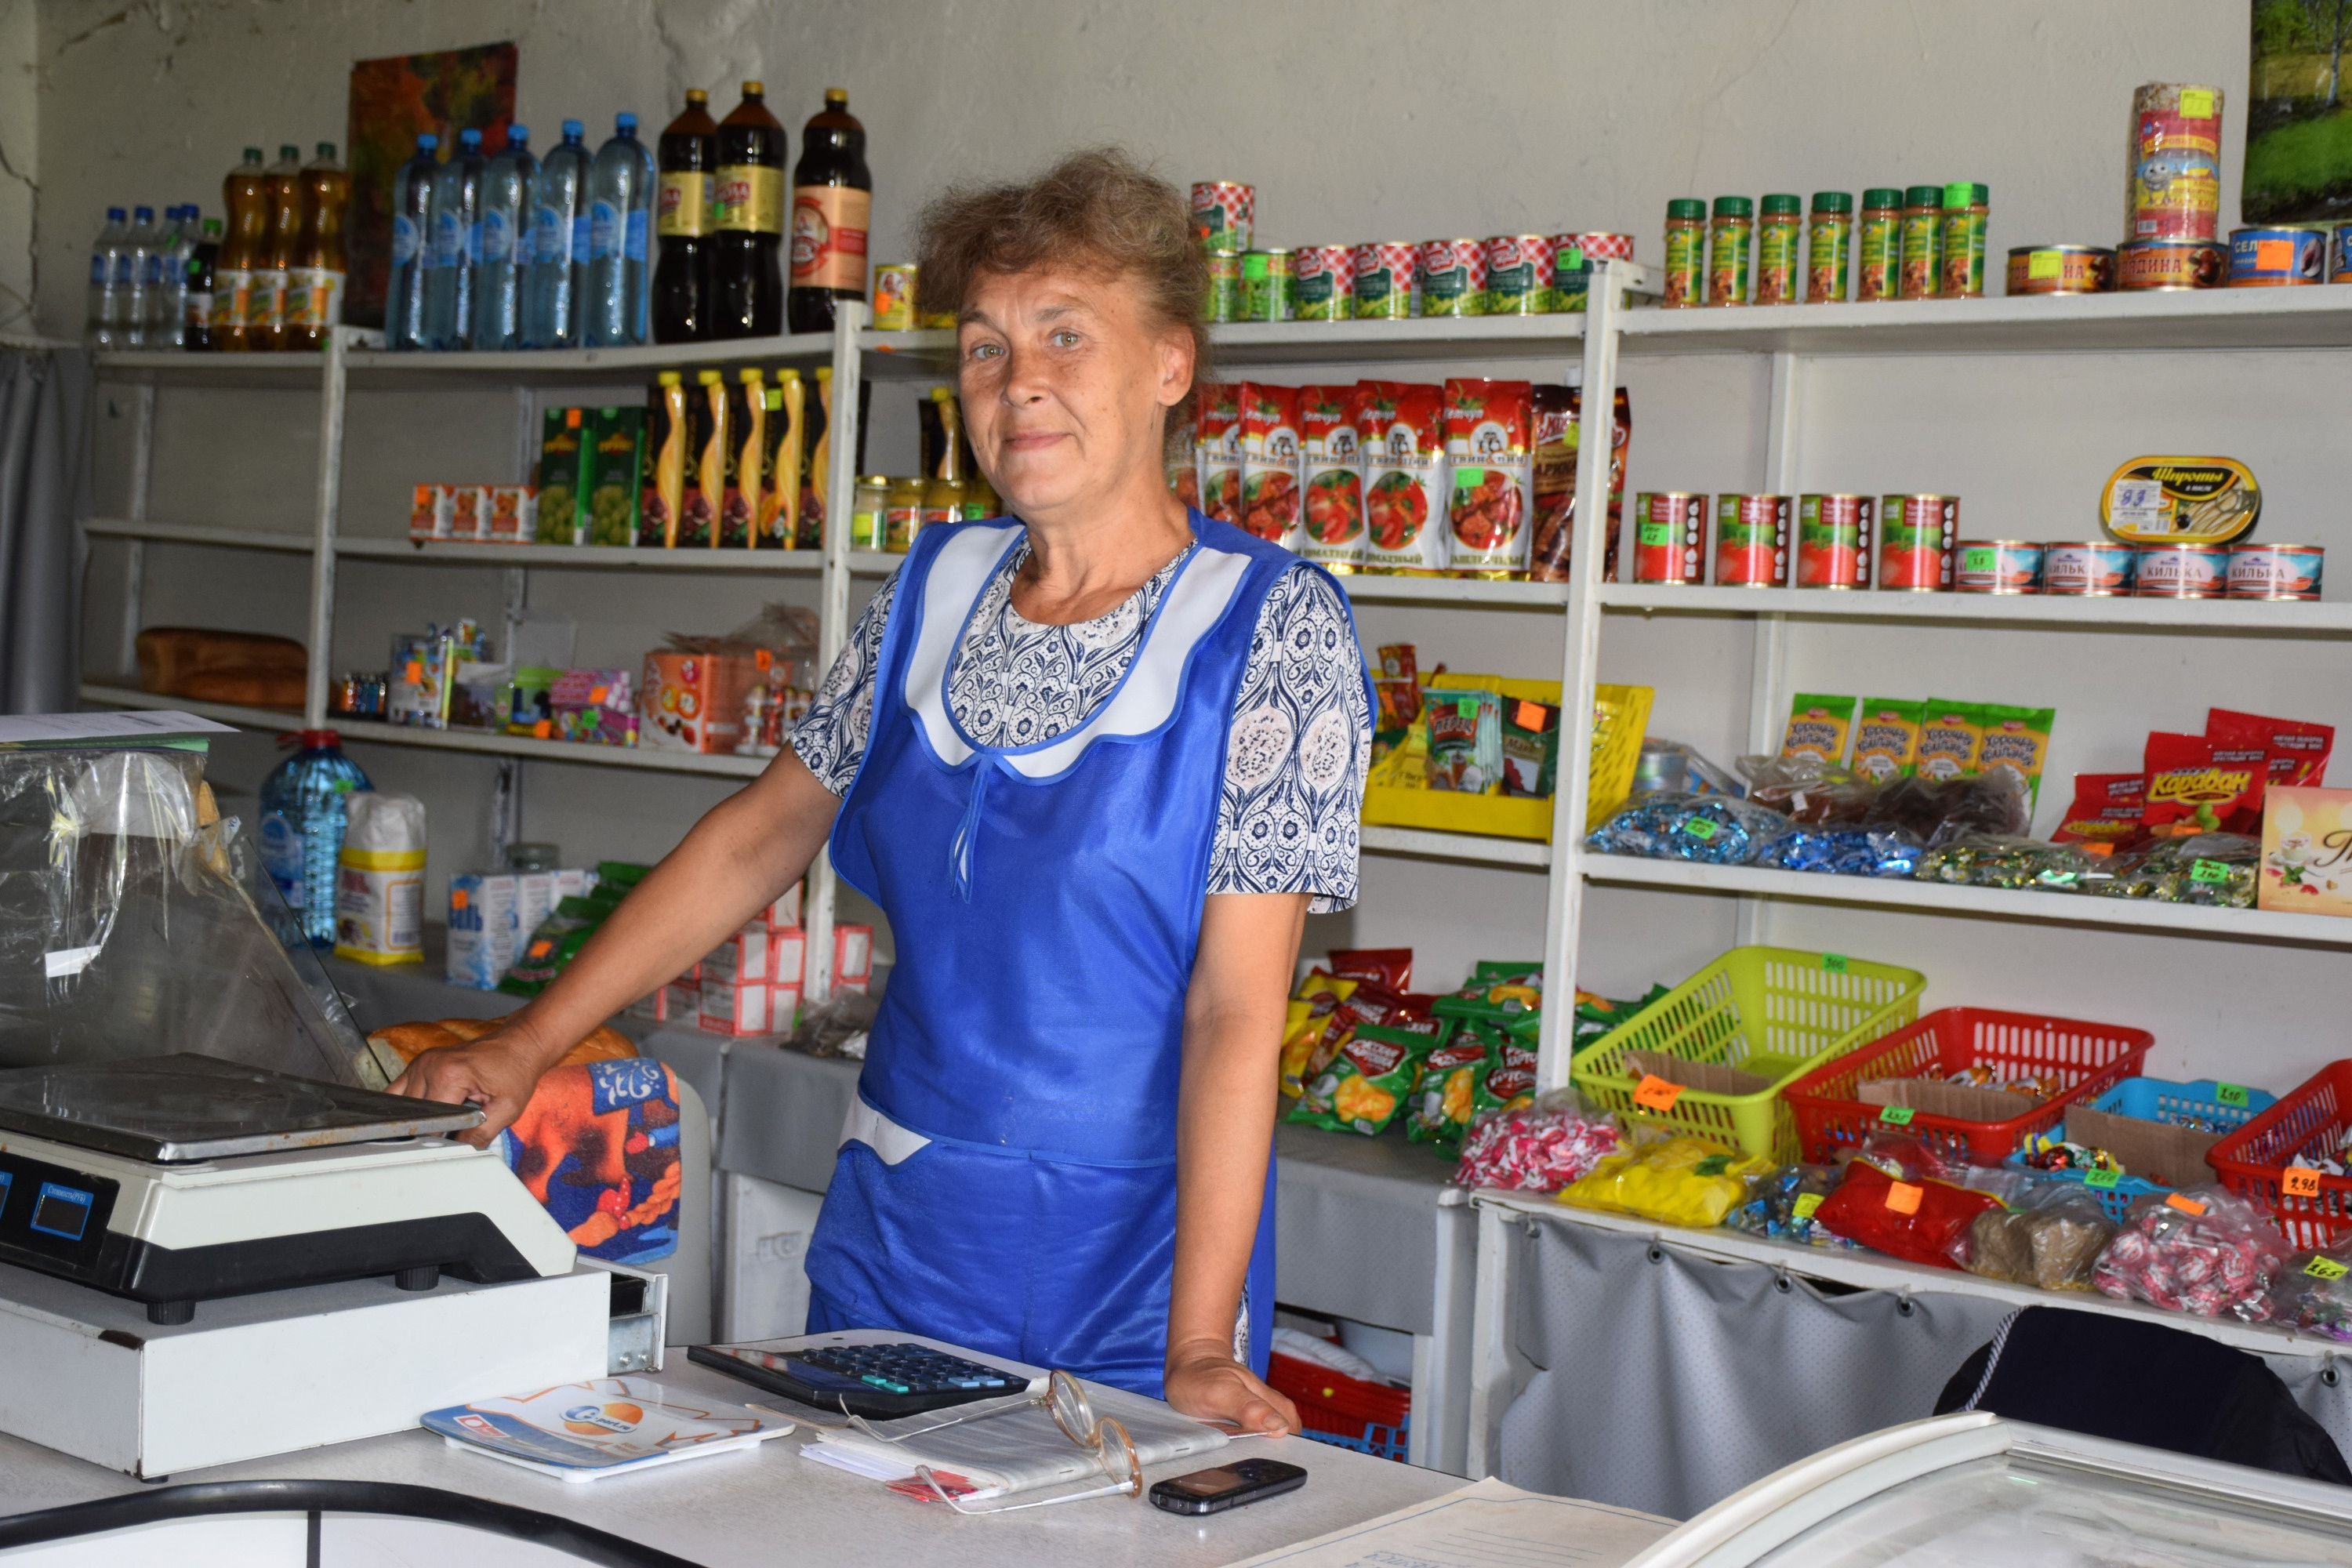 Наталья Хрипунова, продавец местного магазина, рассказала, что Вера Кувшинова — не только почтальон, но и социальный работник, депутат сельсовета, председатель первичной организации инвалидов